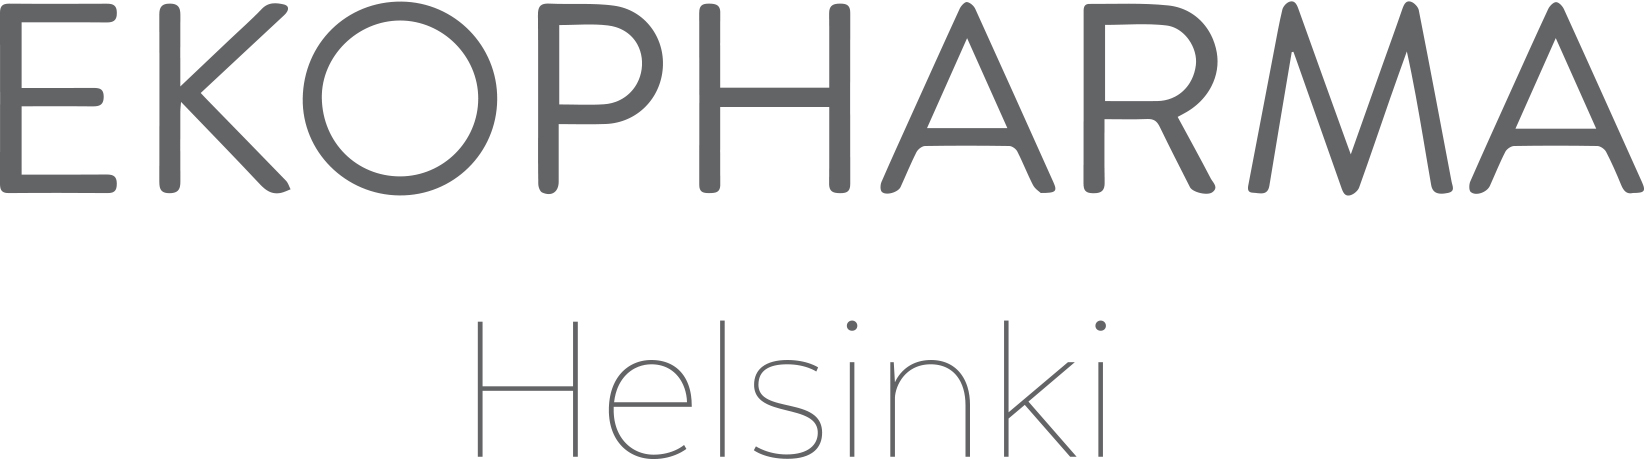 EKOPHARMAHelsinki-logo.jpg